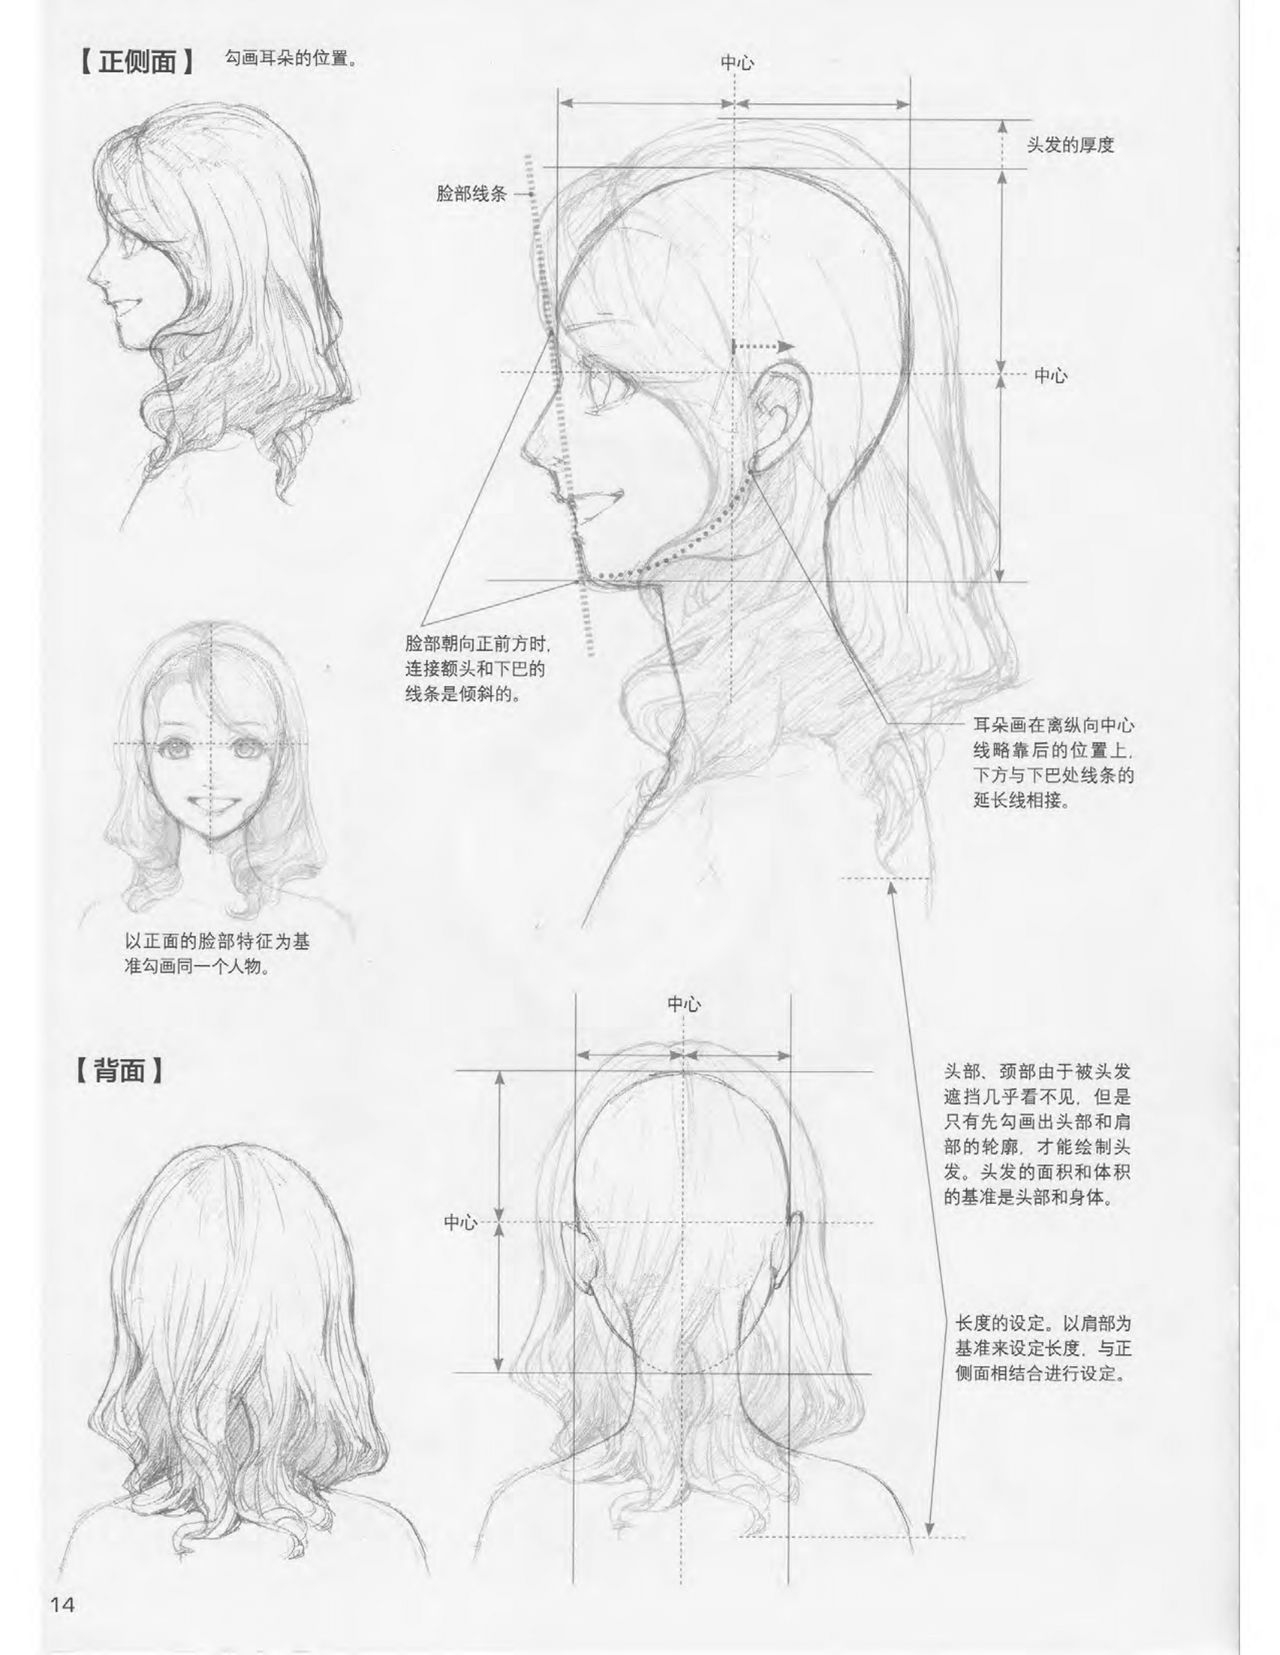 Japanese Manga Master Lecture 3: Lin Akira and Kakumaru Maru Talk About Glamorous Character Modeling 14